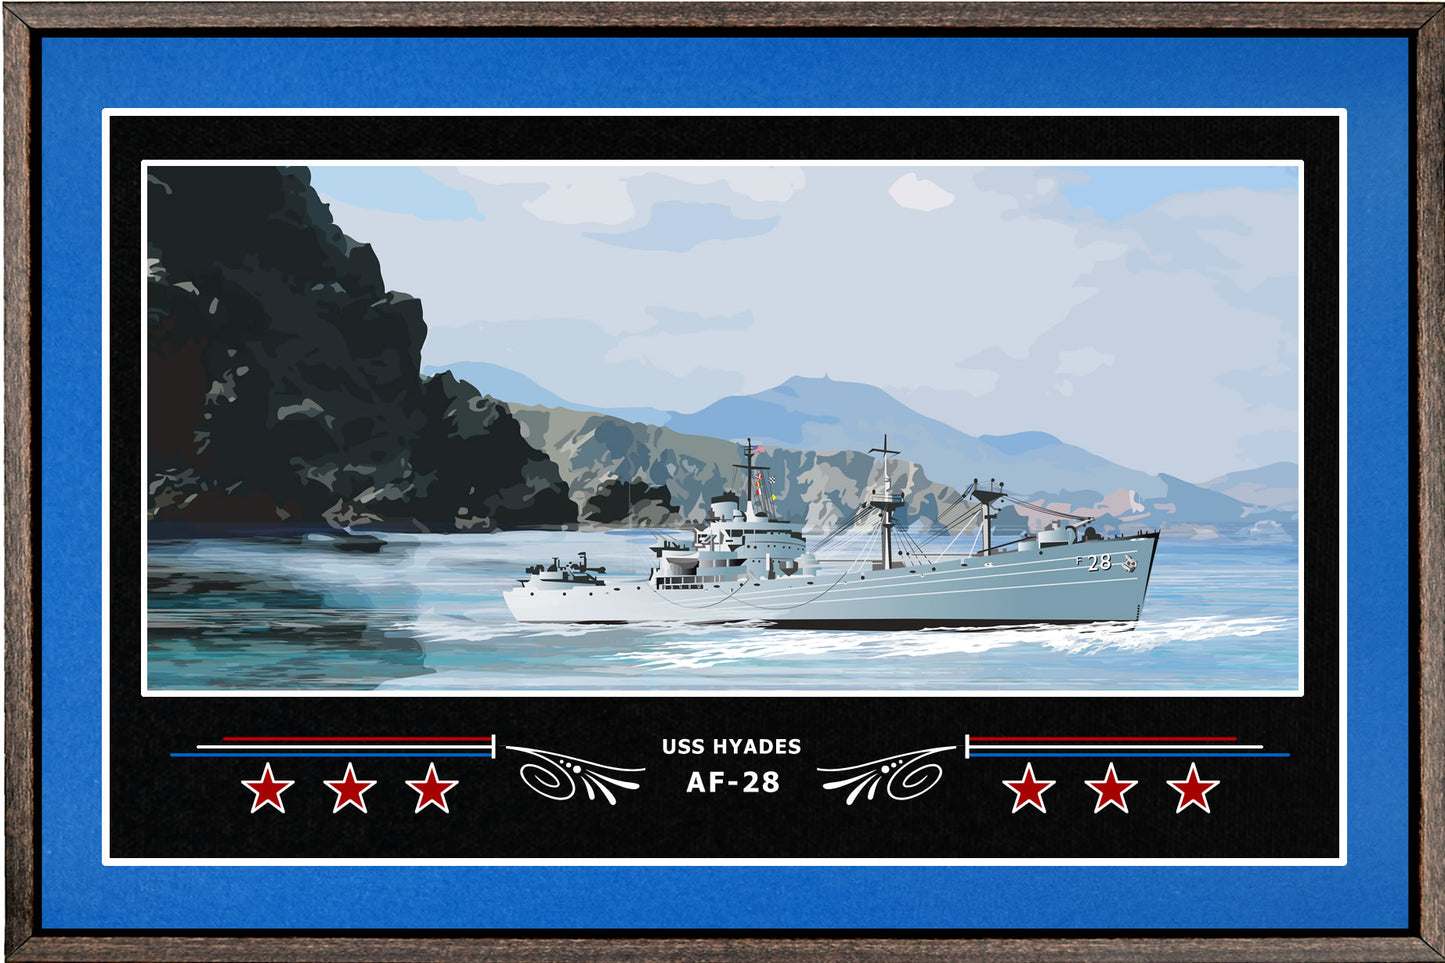 USS HYADES AF 28 BOX FRAMED CANVAS ART BLUE